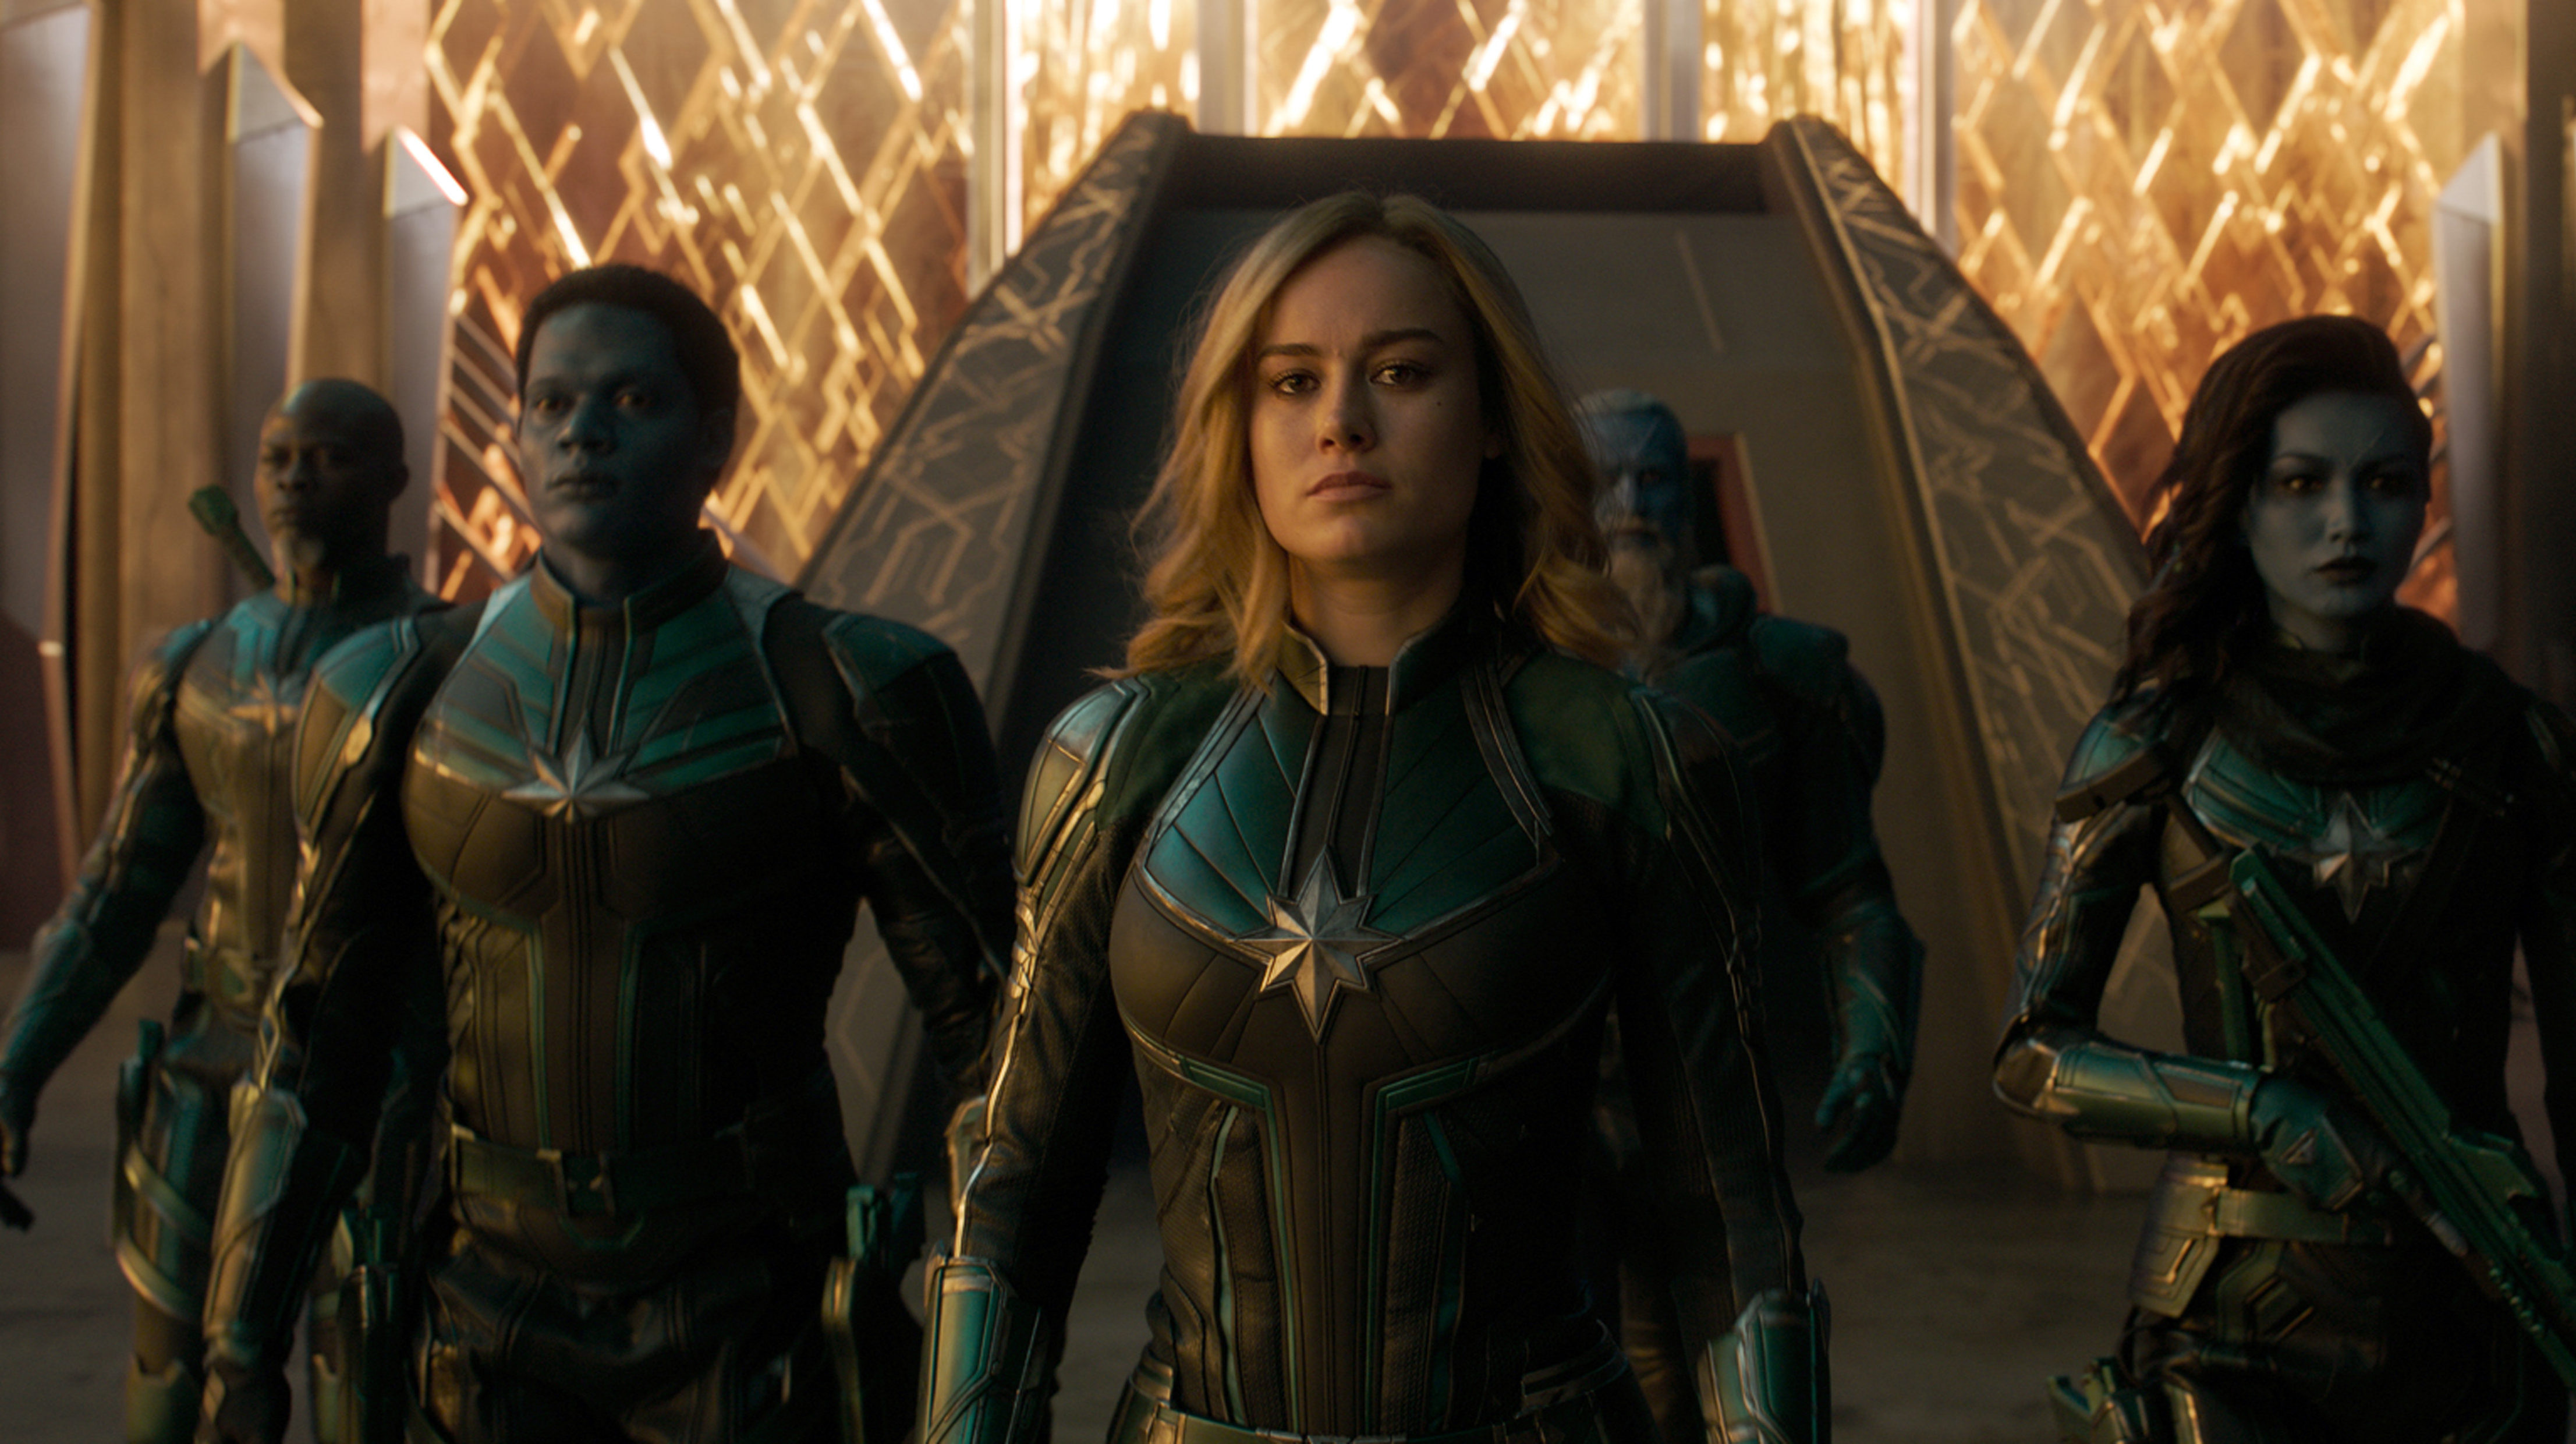 Brie Larson otthon kialakított edzőtermében készül a Marvel Kapitány 2-re